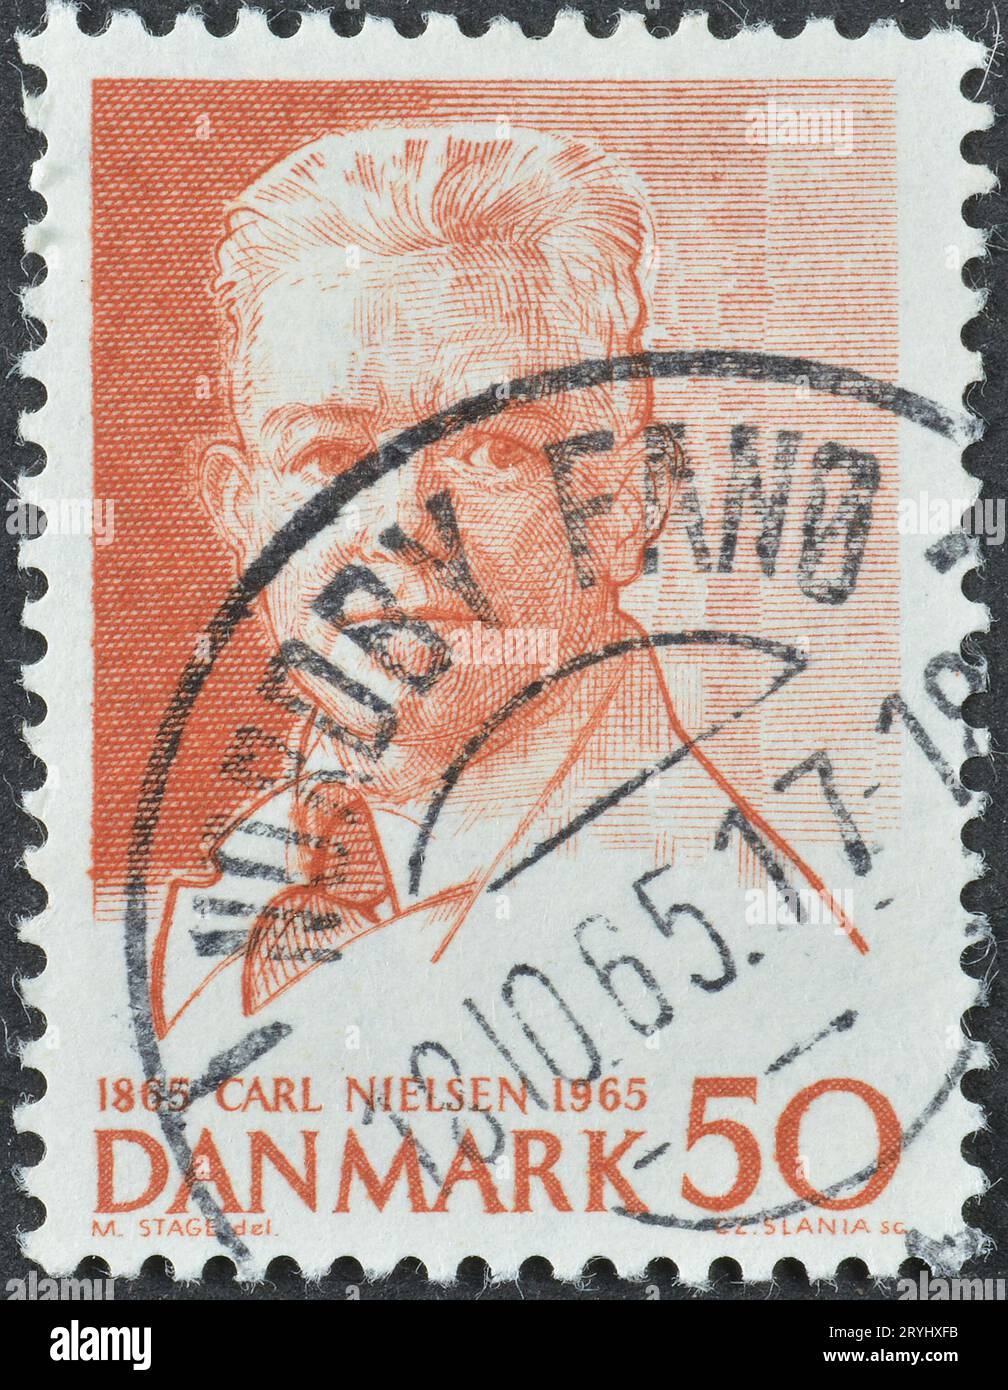 Timbre-poste annulé imprimé par le Danemark, qui montre Carl Nielsen, vers 1965. Banque D'Images